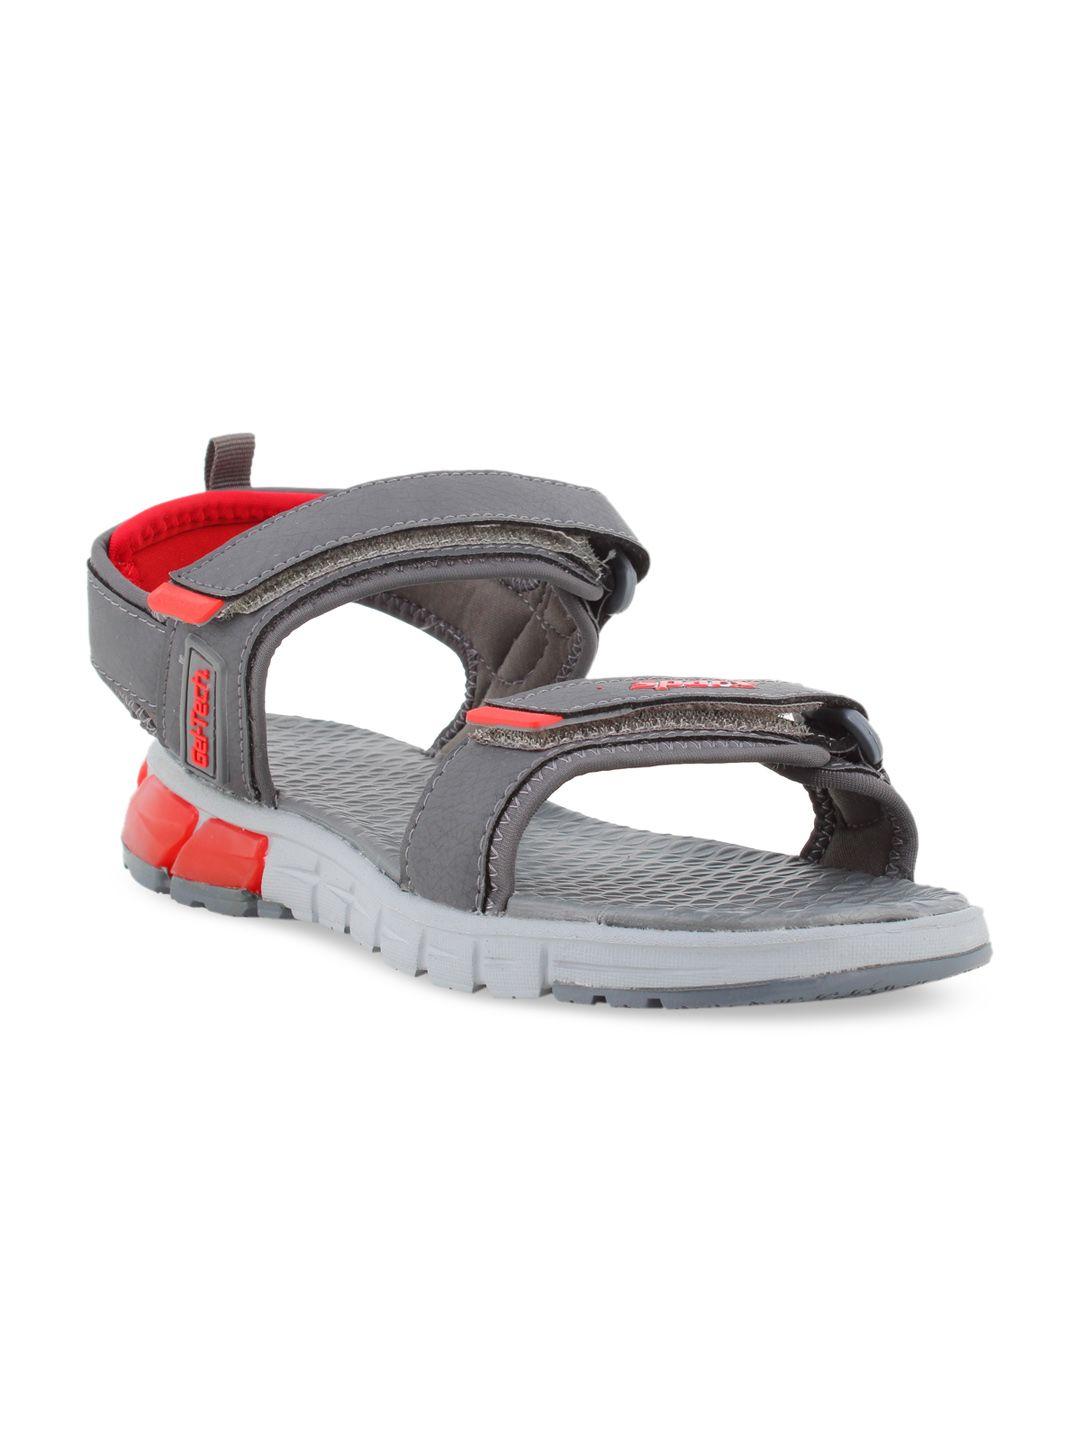 sparx men grey & red sports sandals